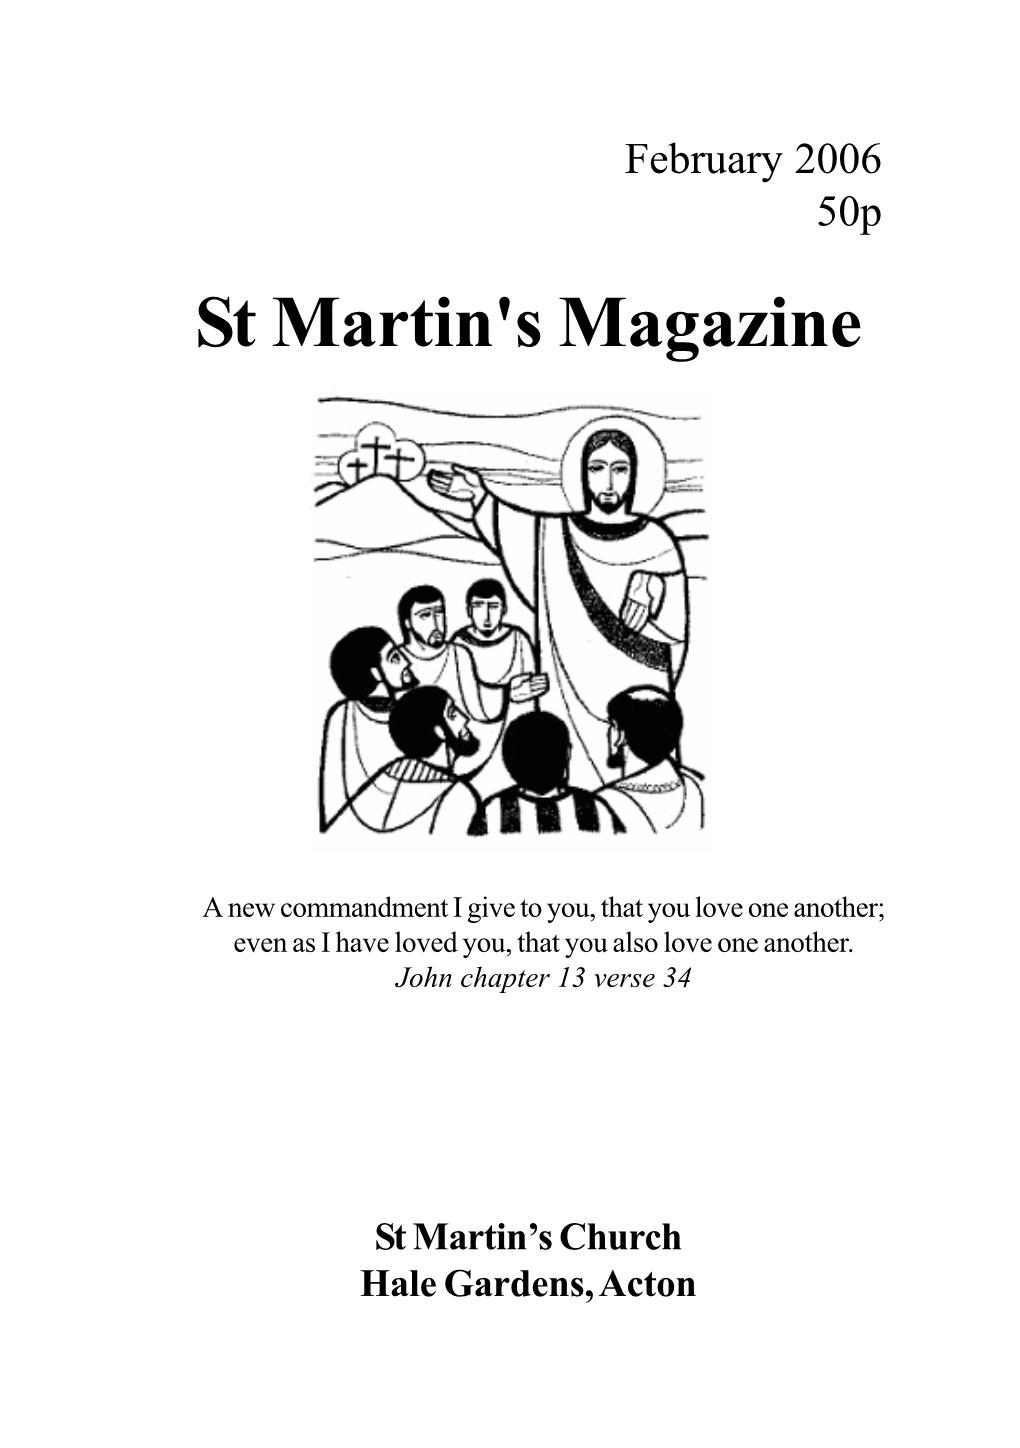 February 2006 50P St Martin's Magazine